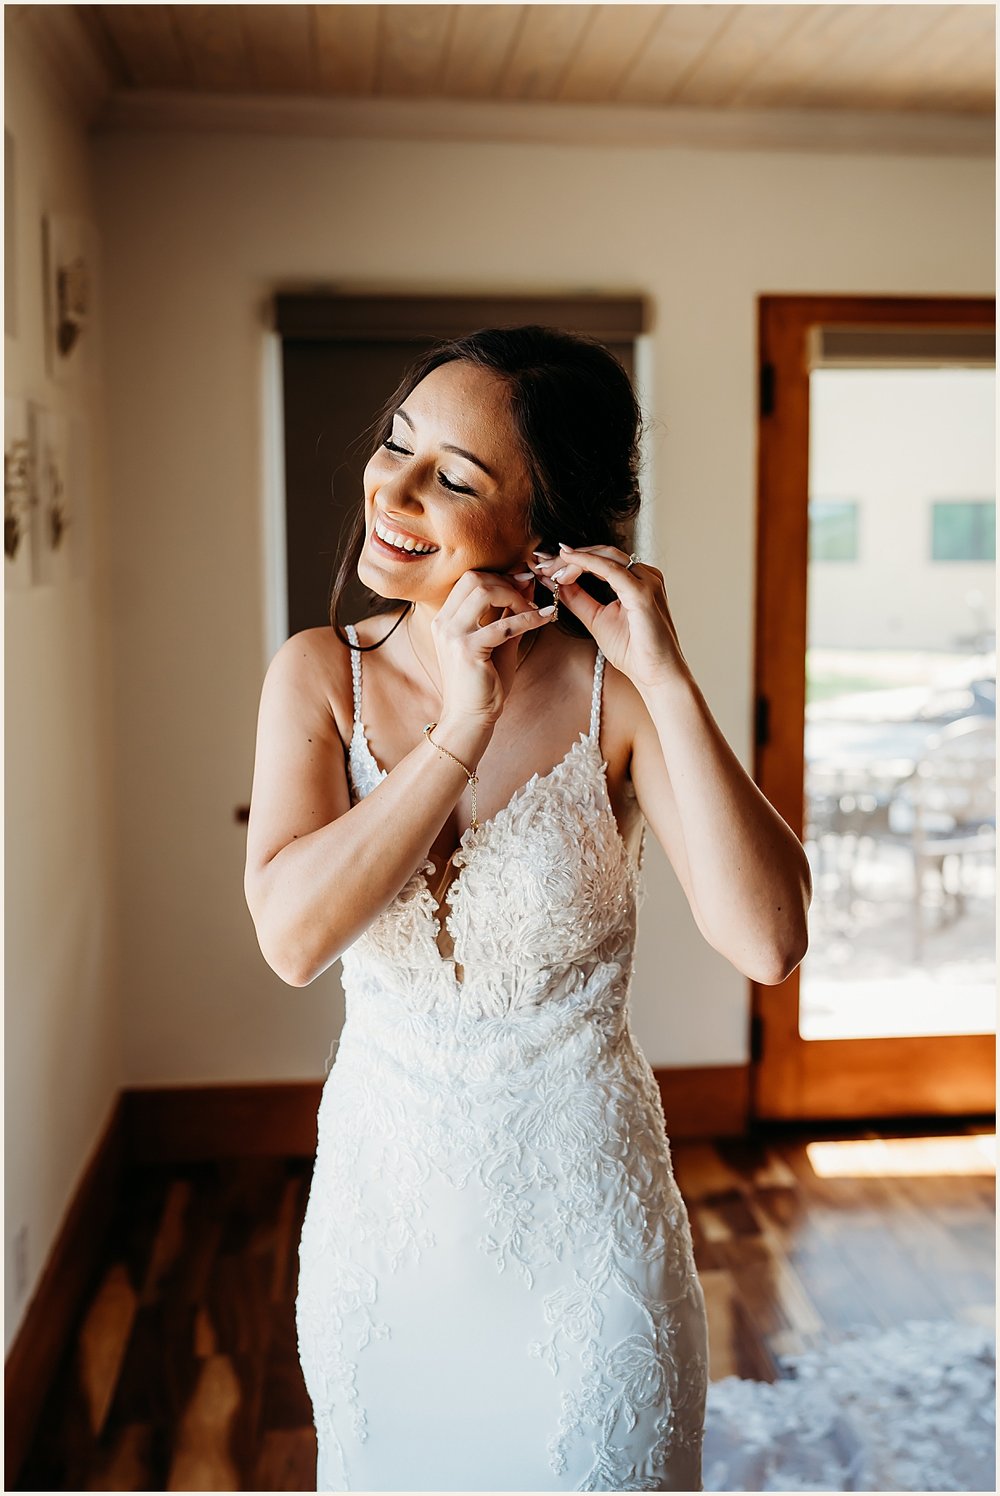 Bride wedding photo details | Lauren Crumpler Photography | Texas Wedding Photographer